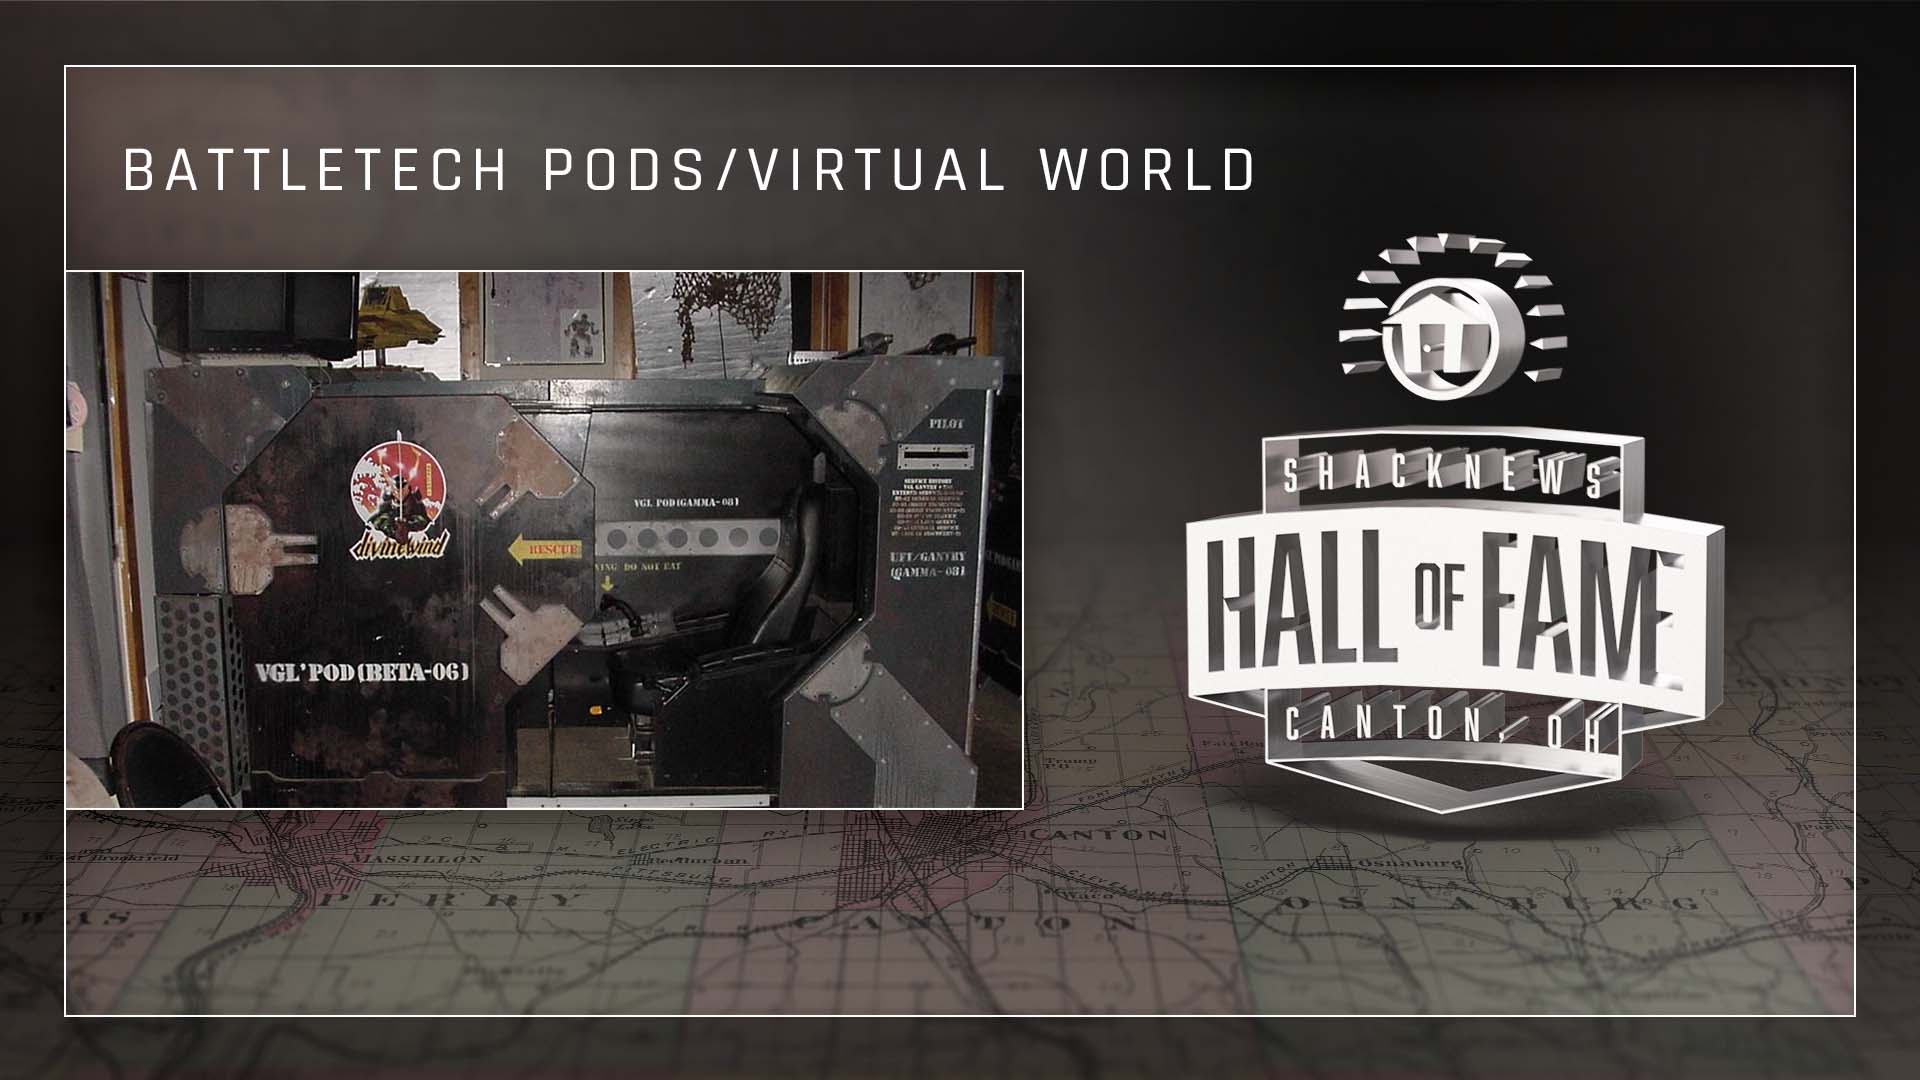 Battletech Pods/Virtual World.